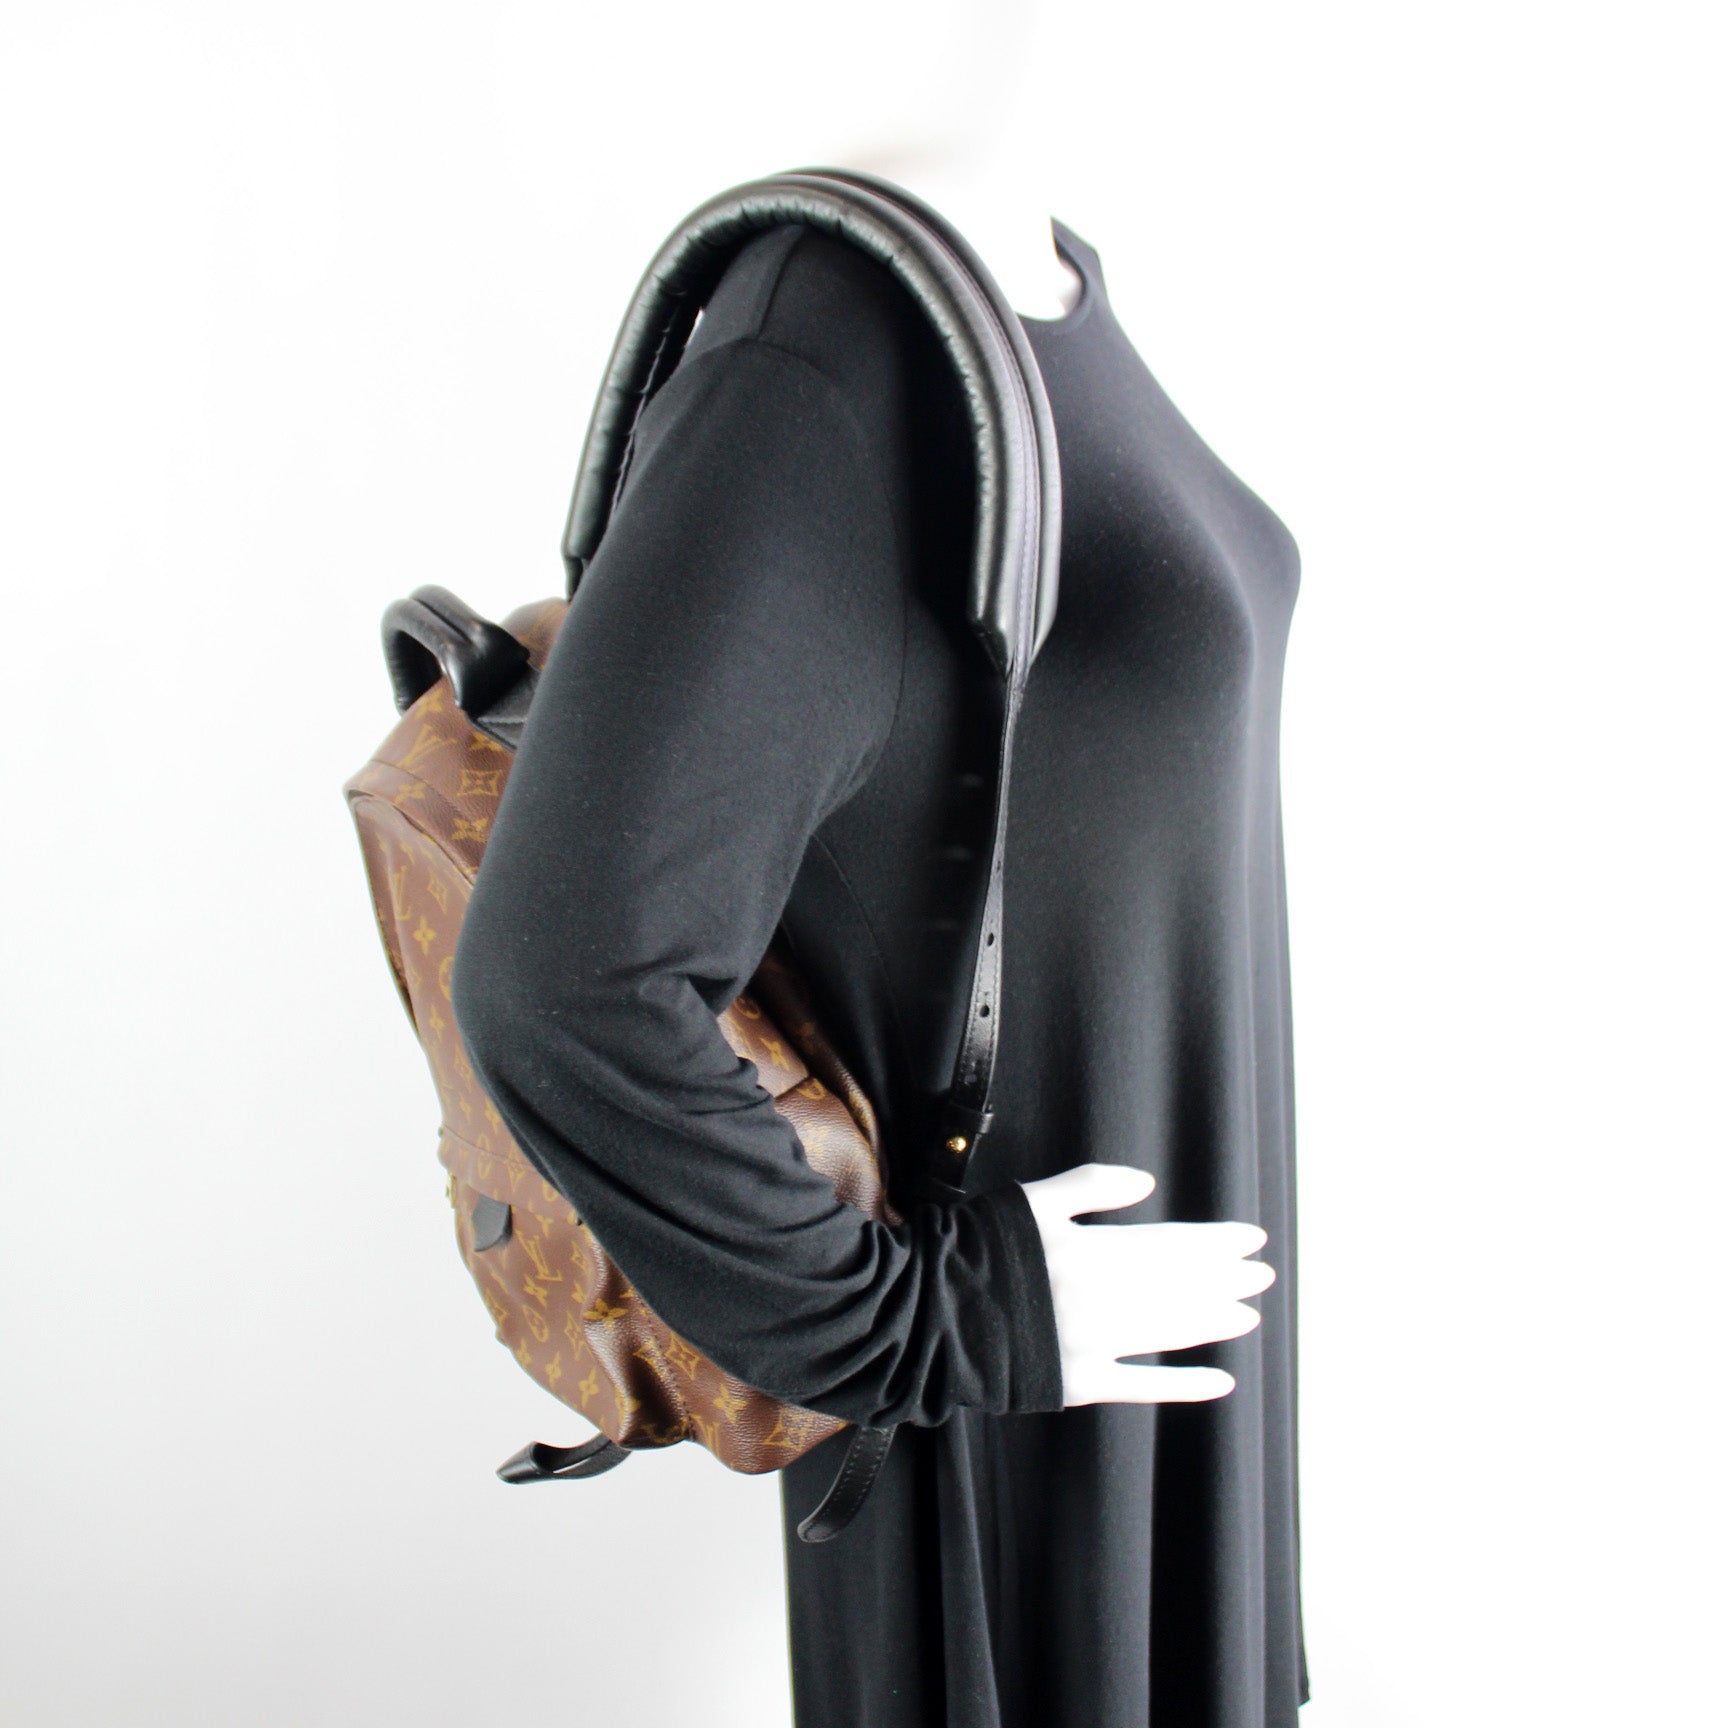 Palm Springs Backpack MM (PL2) – Keeks Designer Handbags